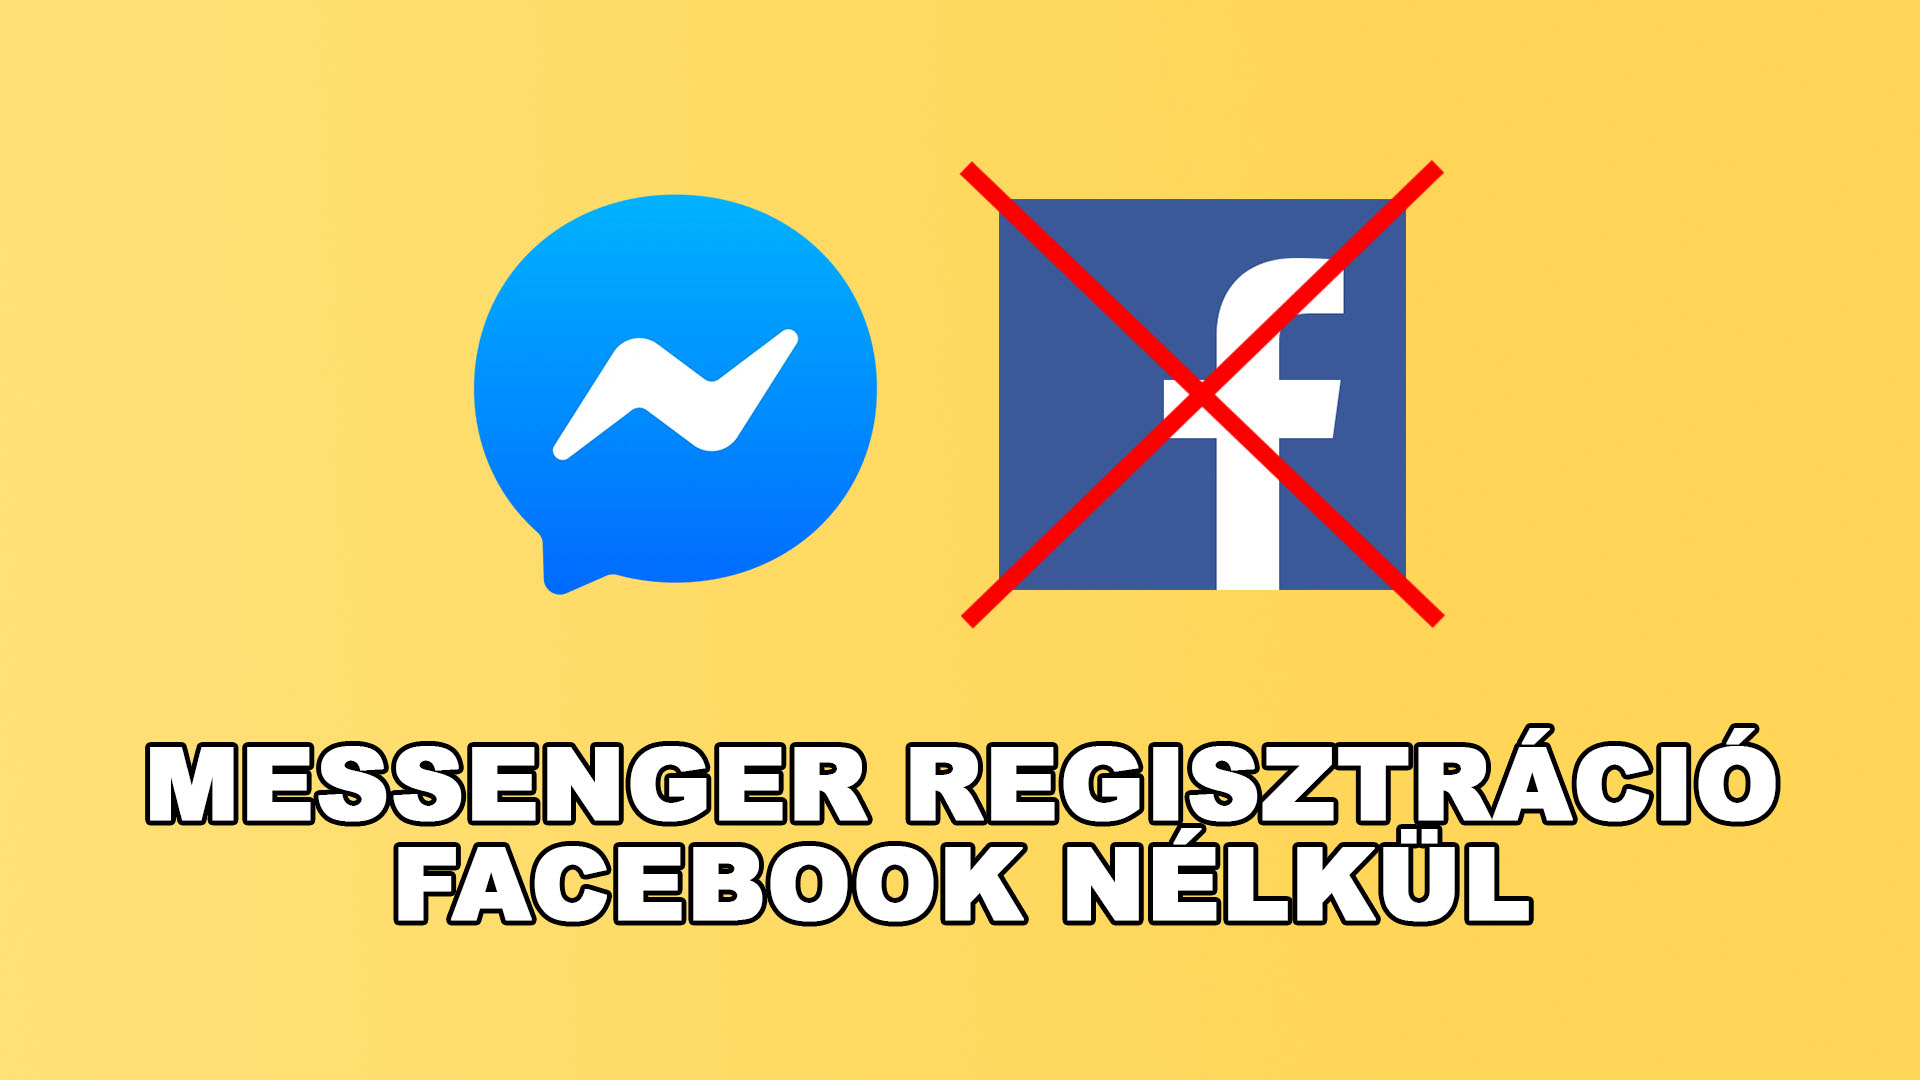 [Messenger regisztráció Facebook nélkül] - Lehetséges a Messenger regisztráció Facebook fiók nélkül?